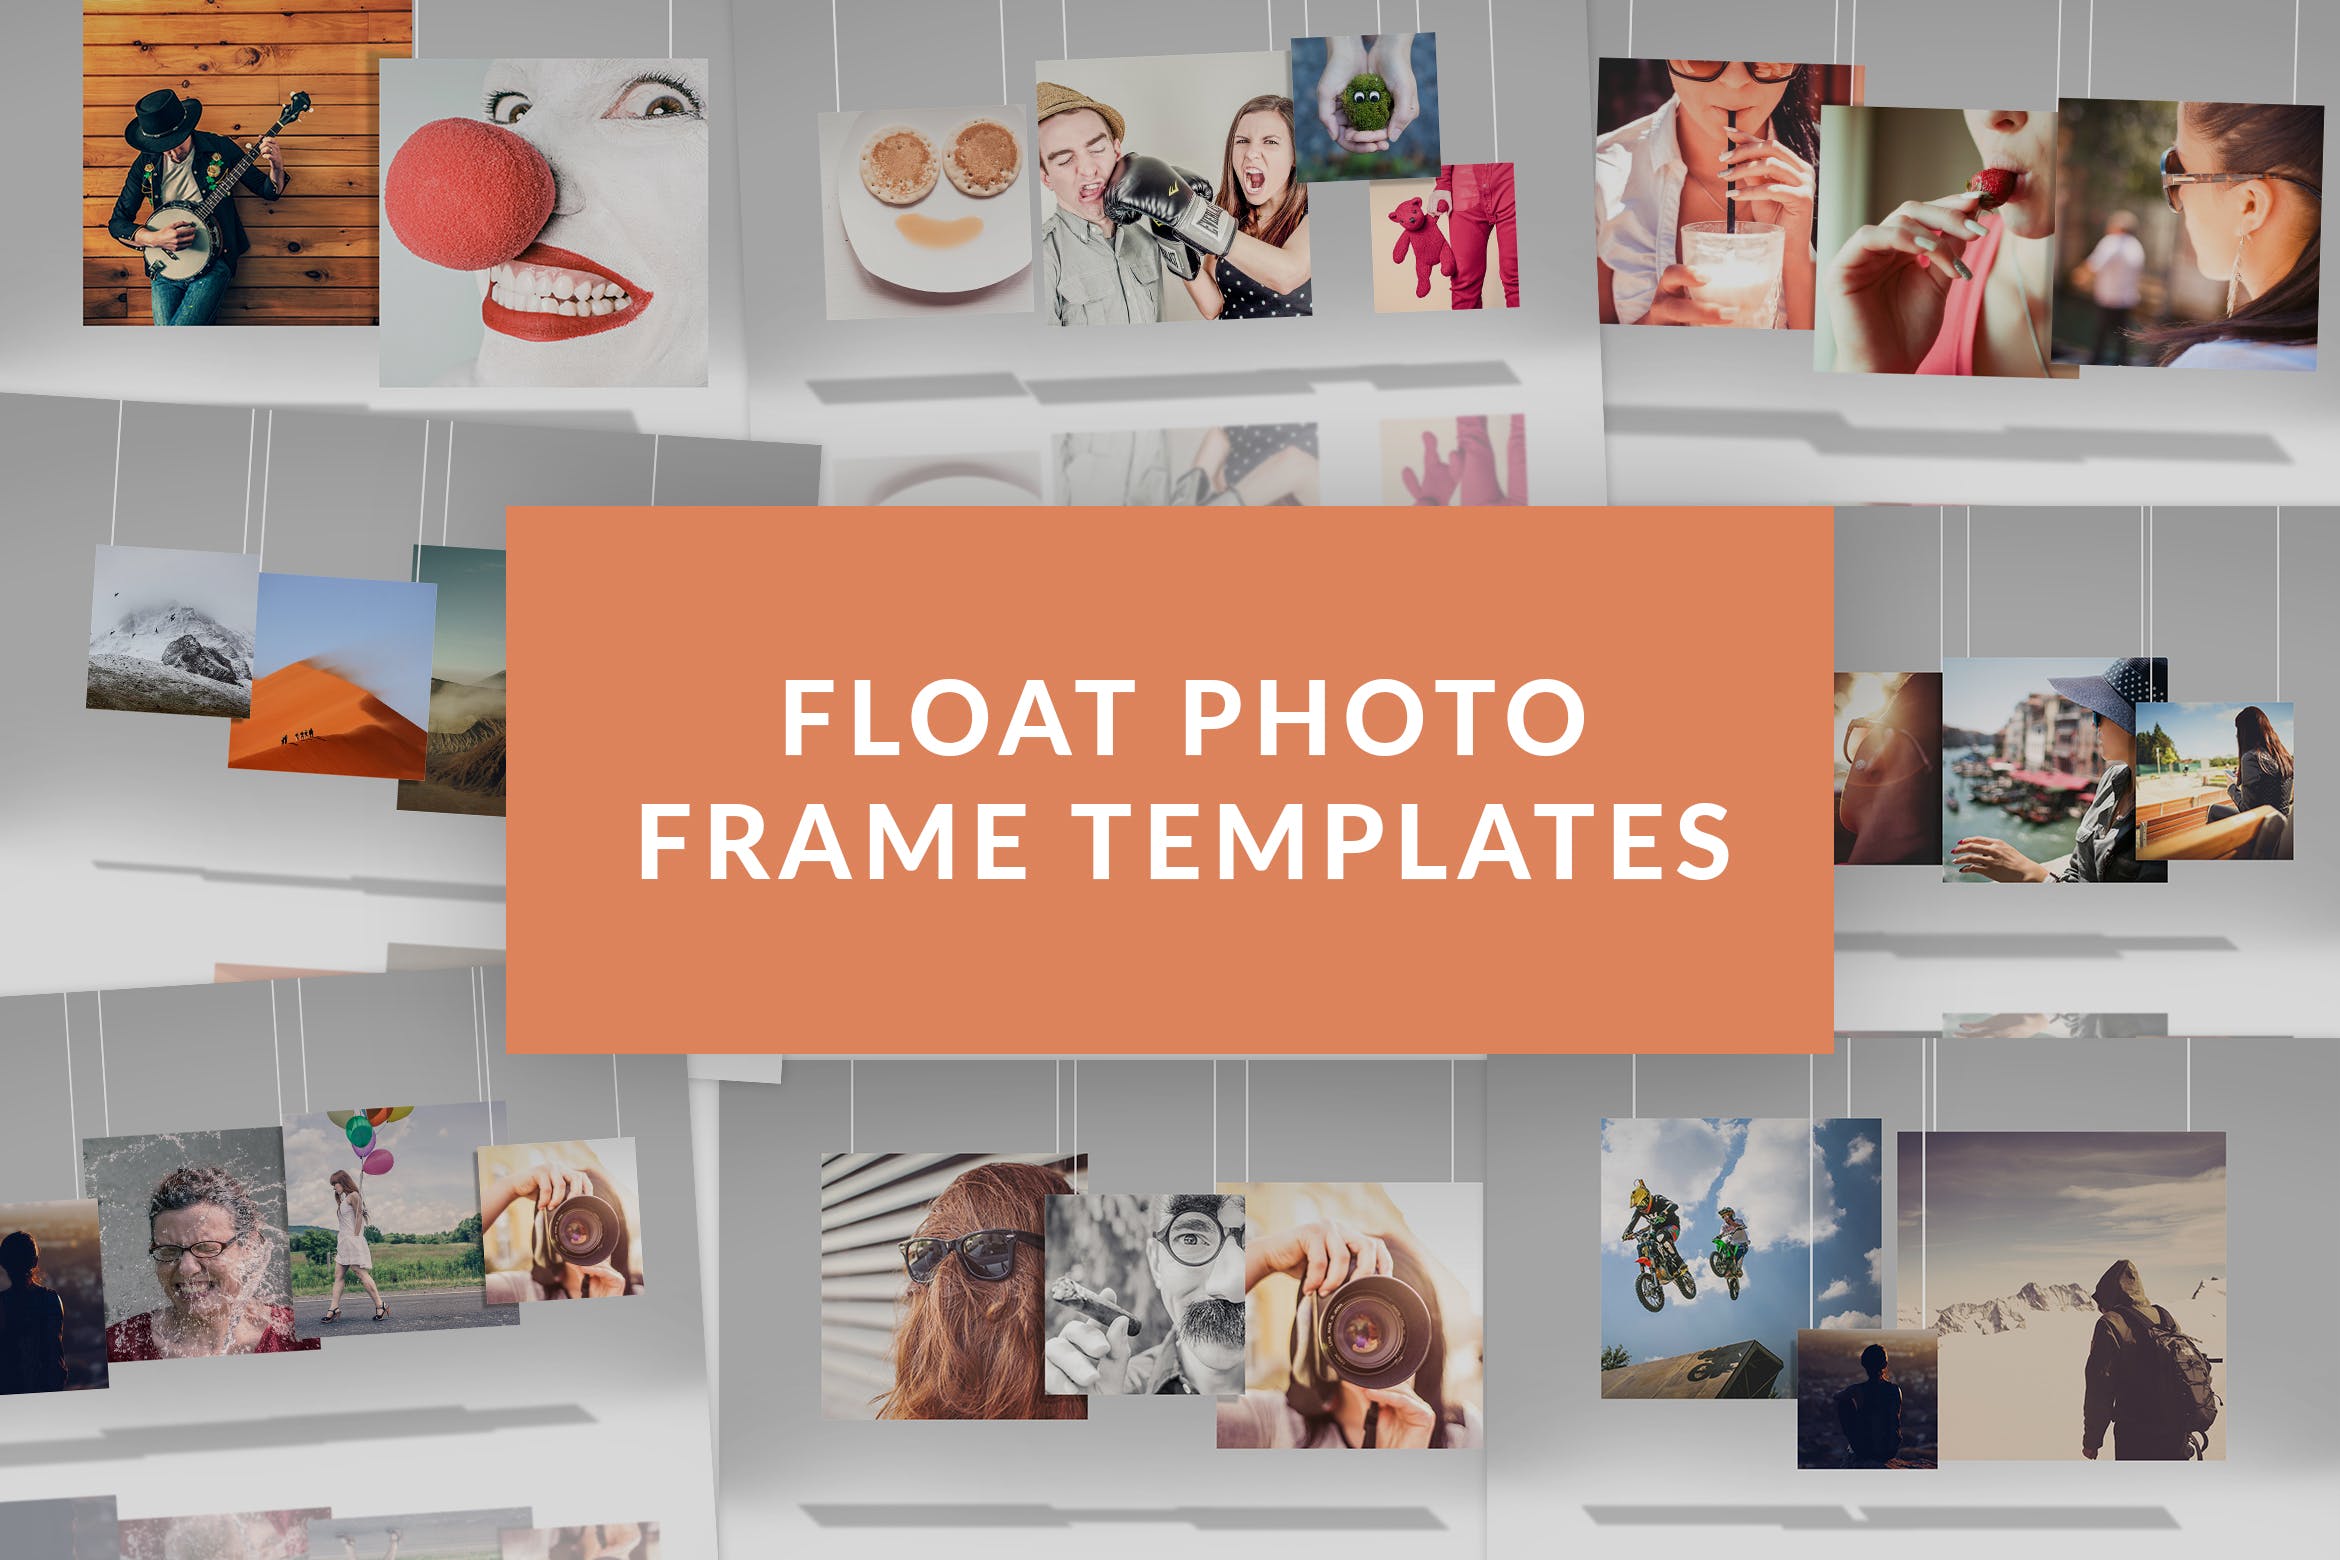 创意悬挂式照片展示样机模板 Float Photo Frame Templates插图